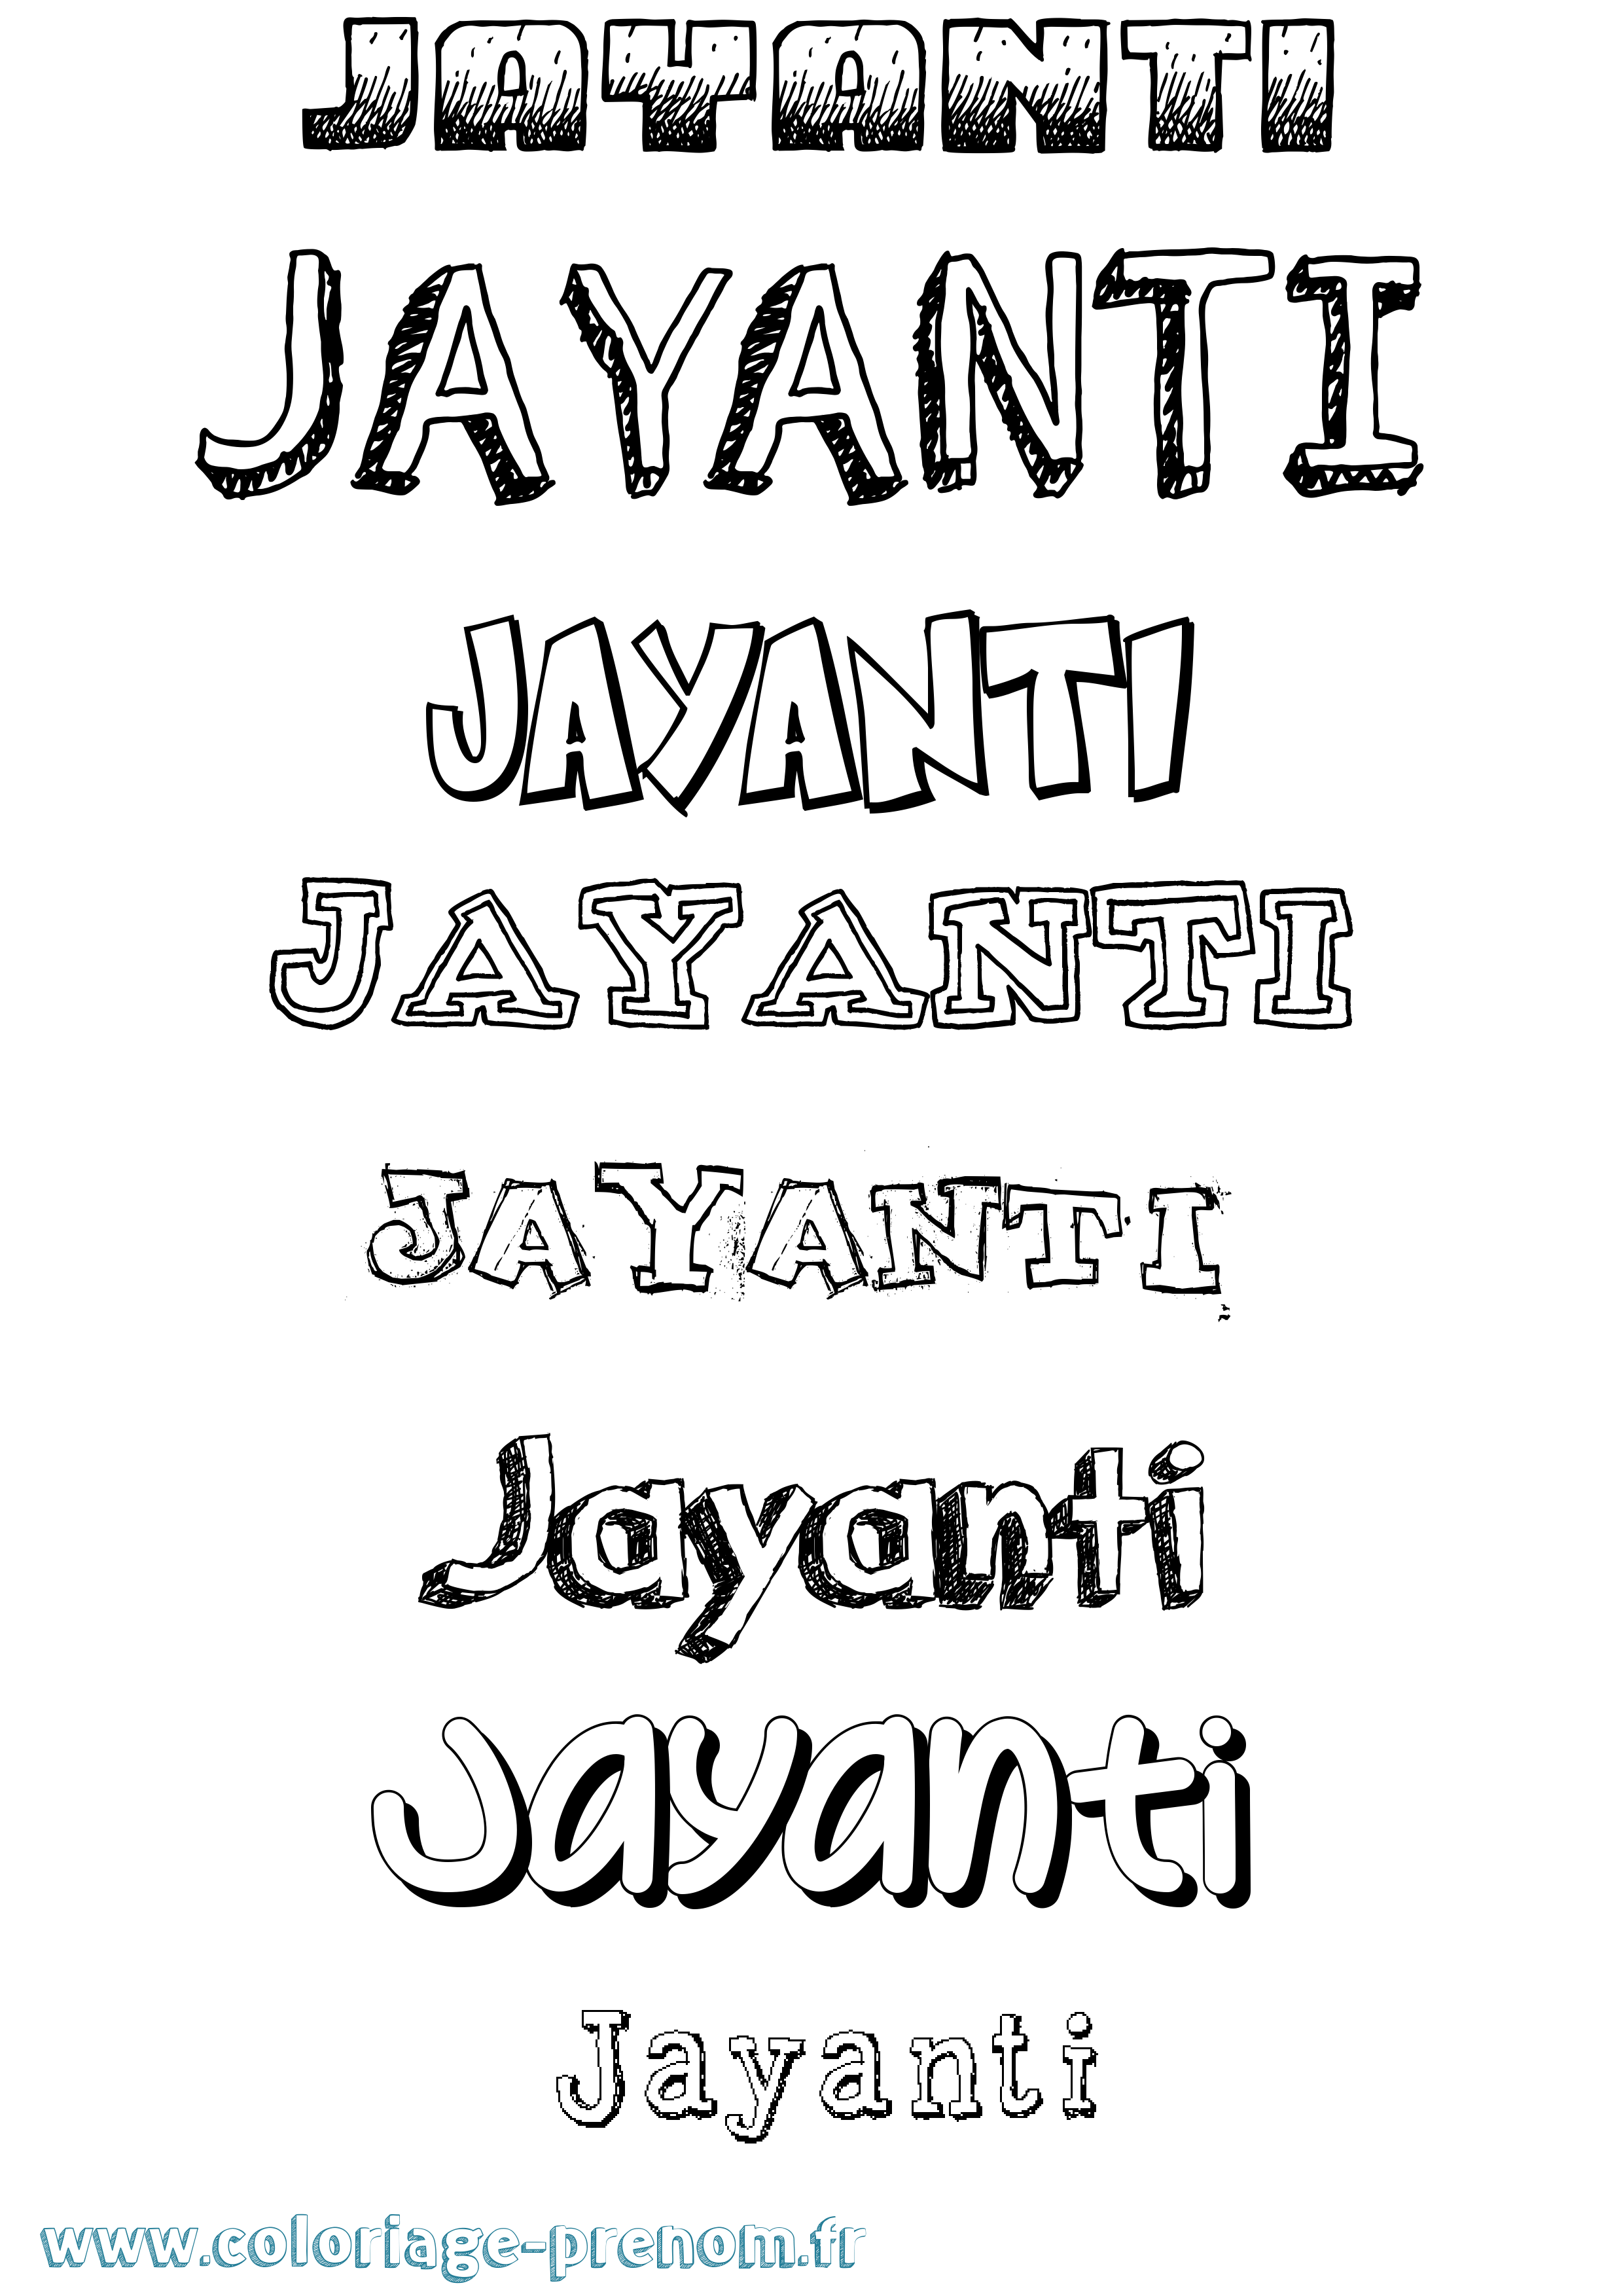 Coloriage prénom Jayanti Dessiné